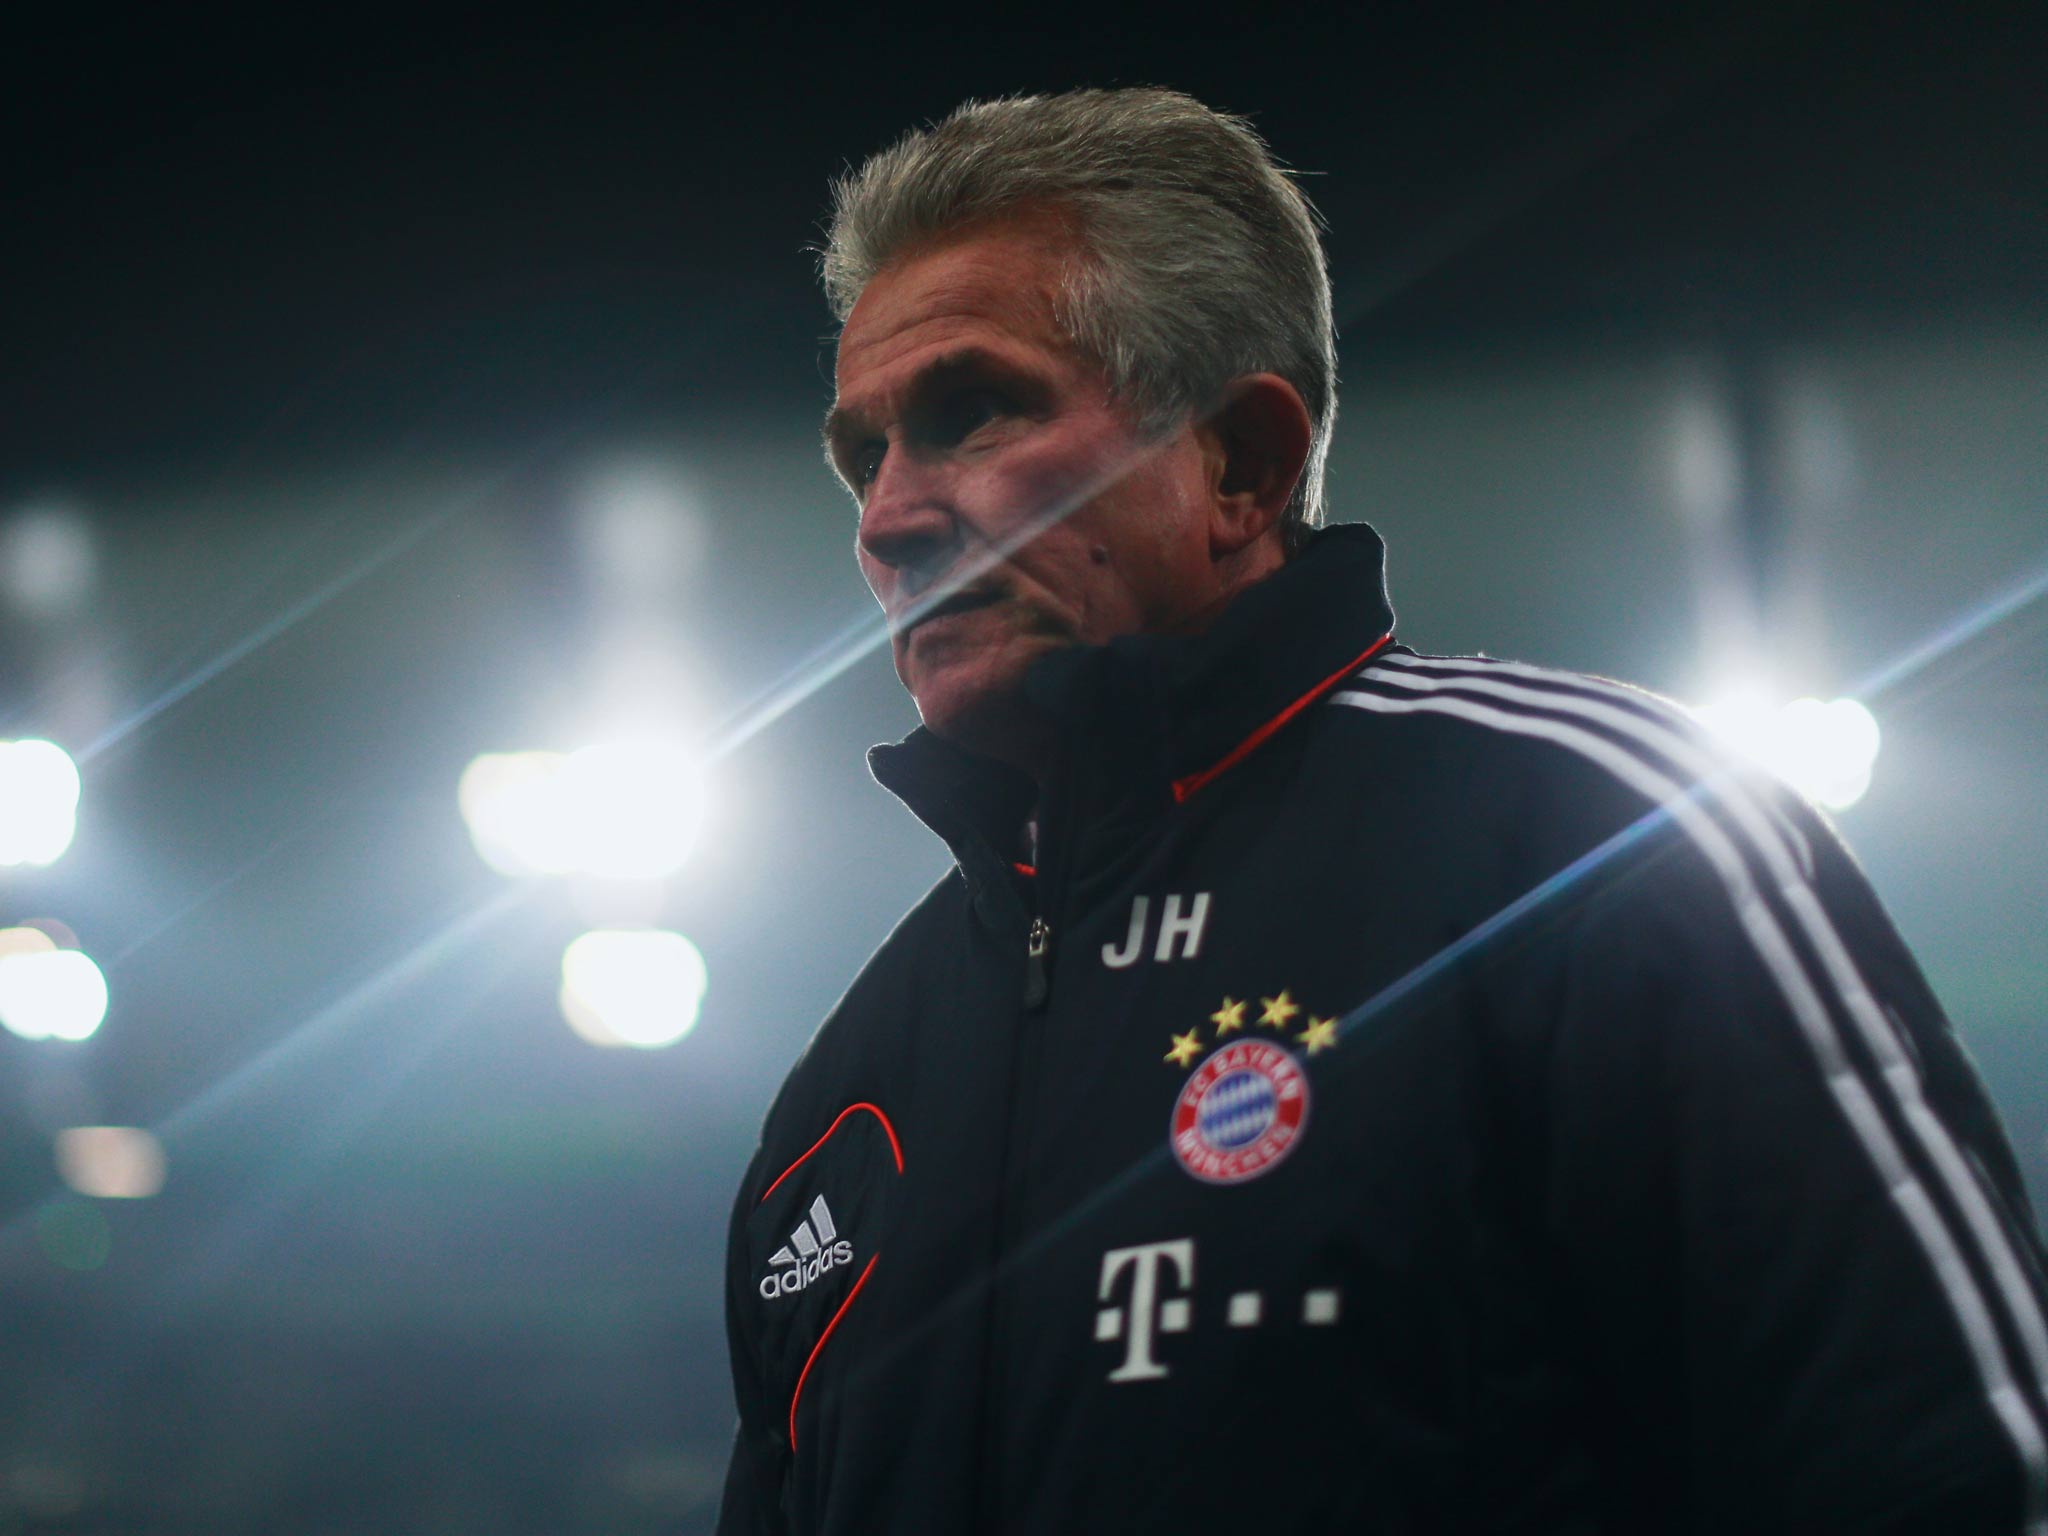 Bayern Munich manager Jupp Heynckes